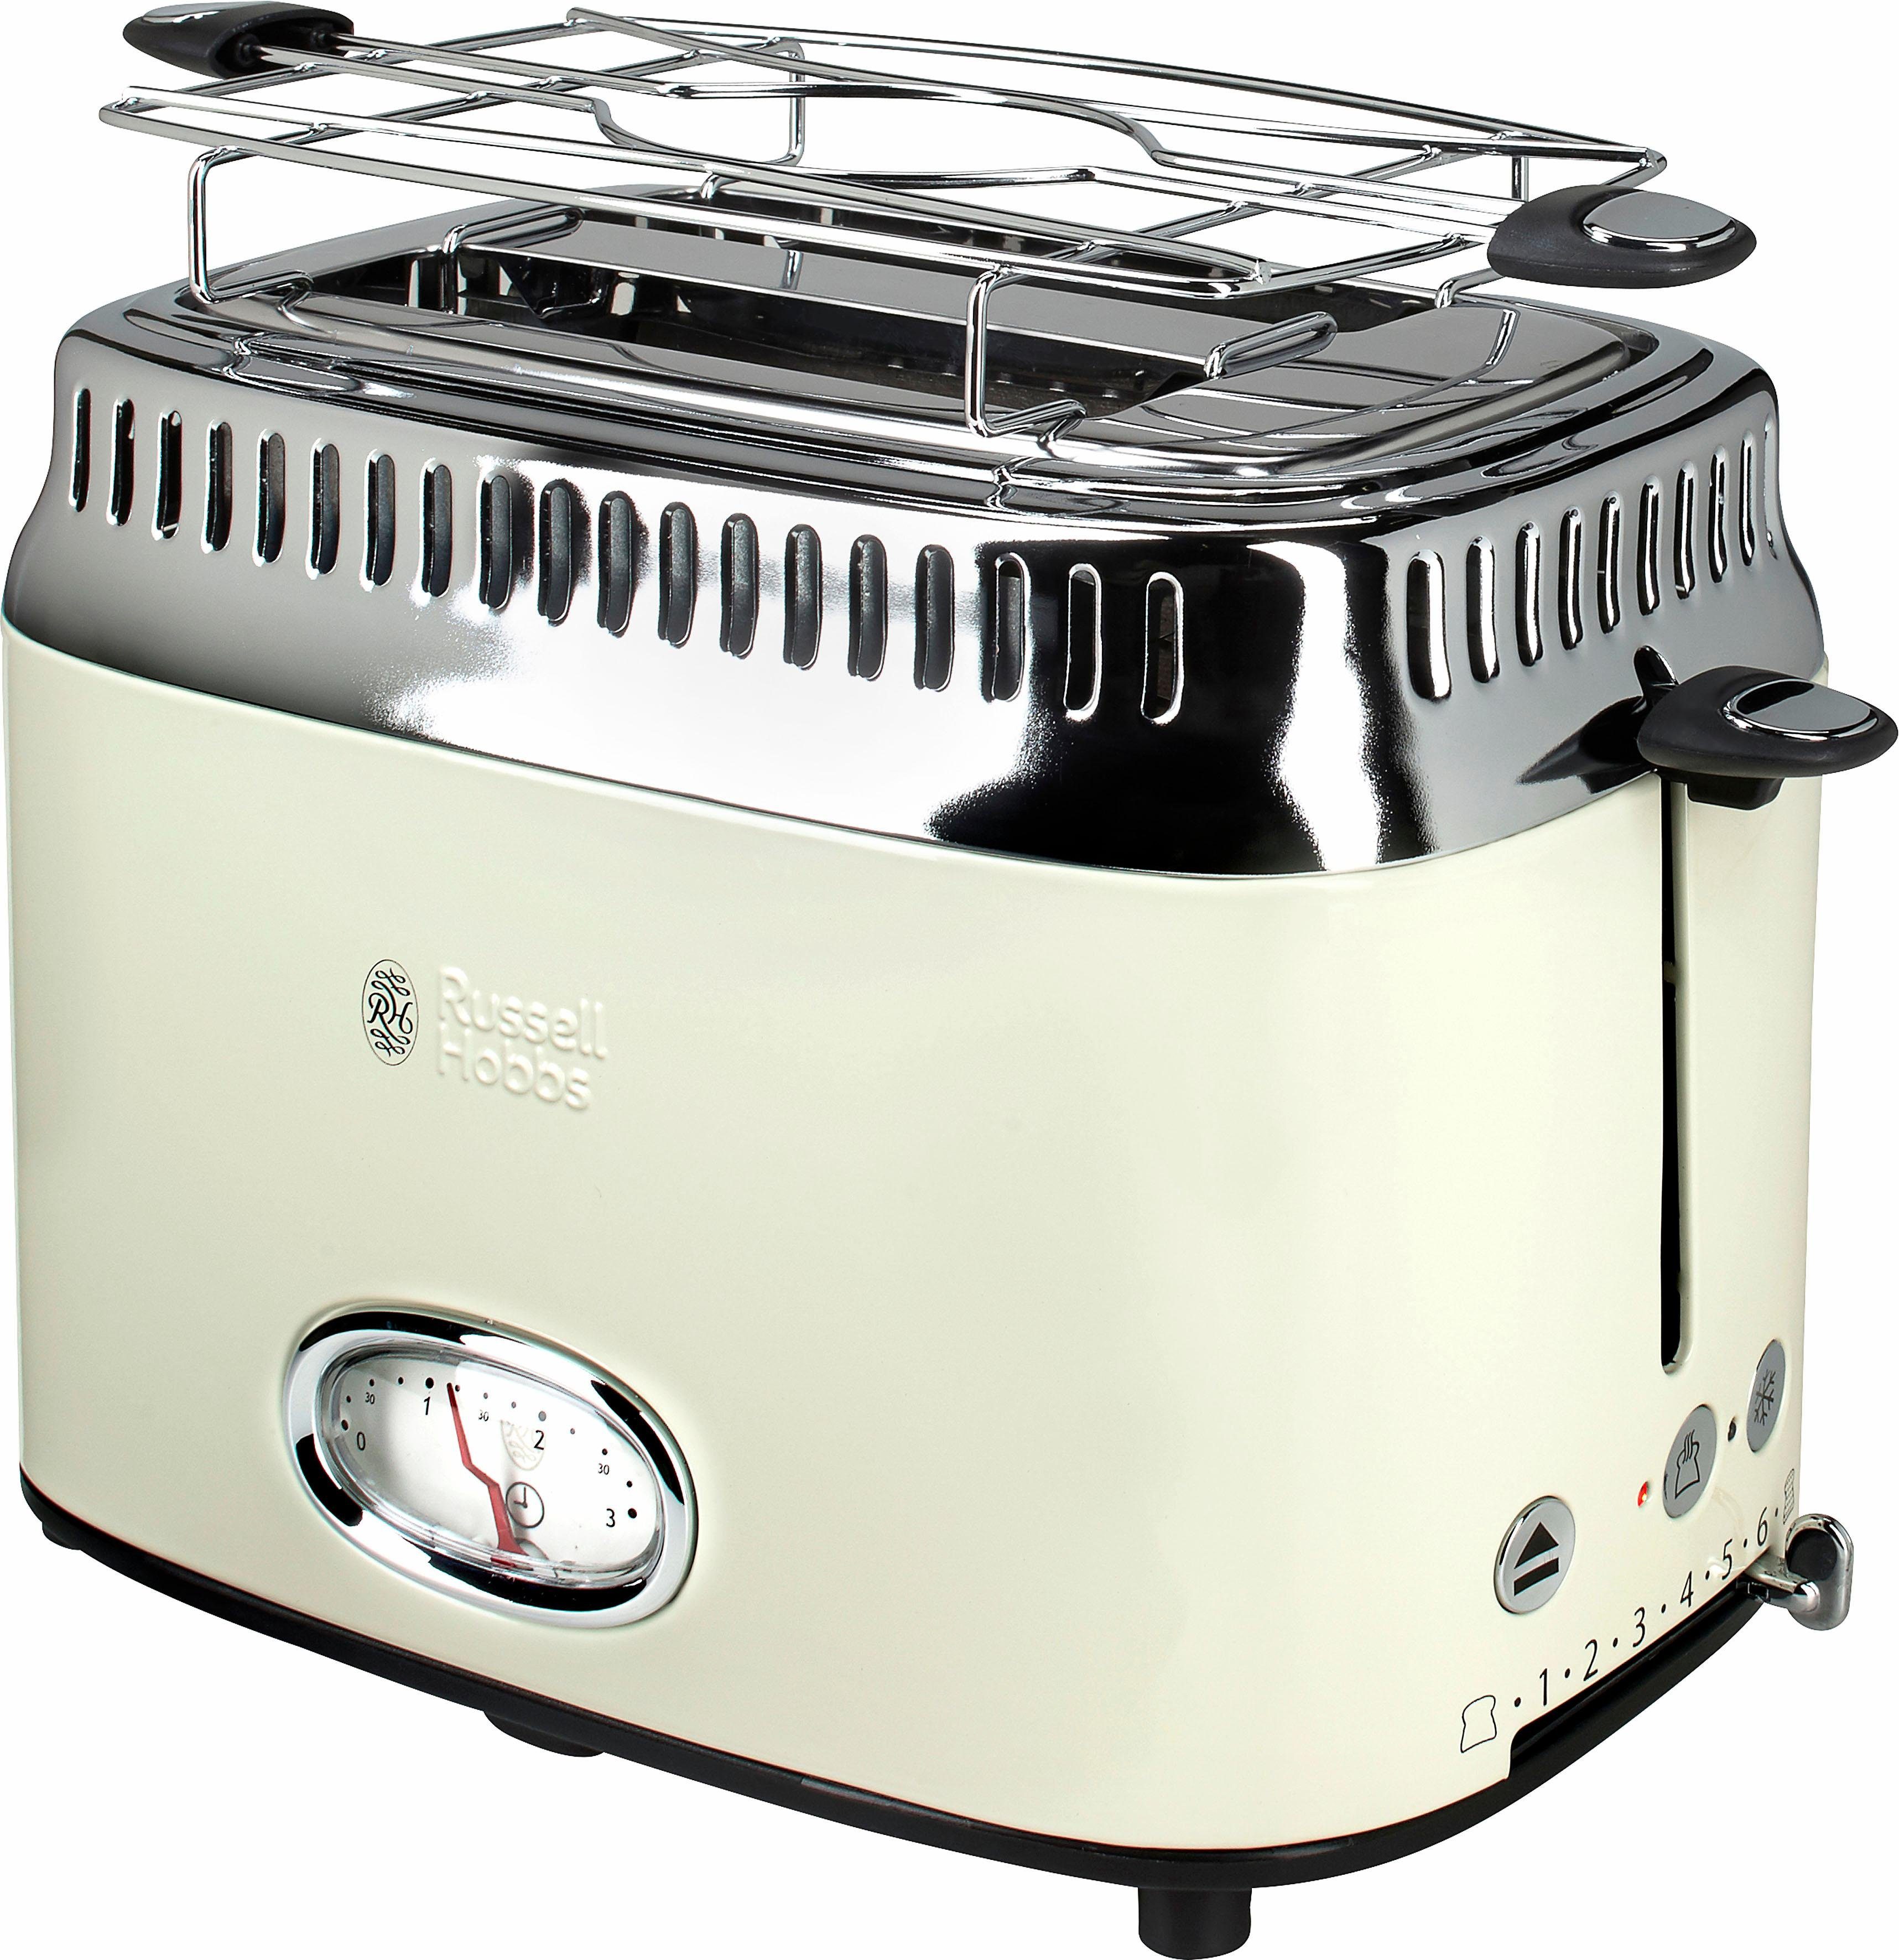 RUSSELL HOBBS Toaster 21682-56, Schlitze, Cream 2 kurze 1300 W, Beige Retro Vintage